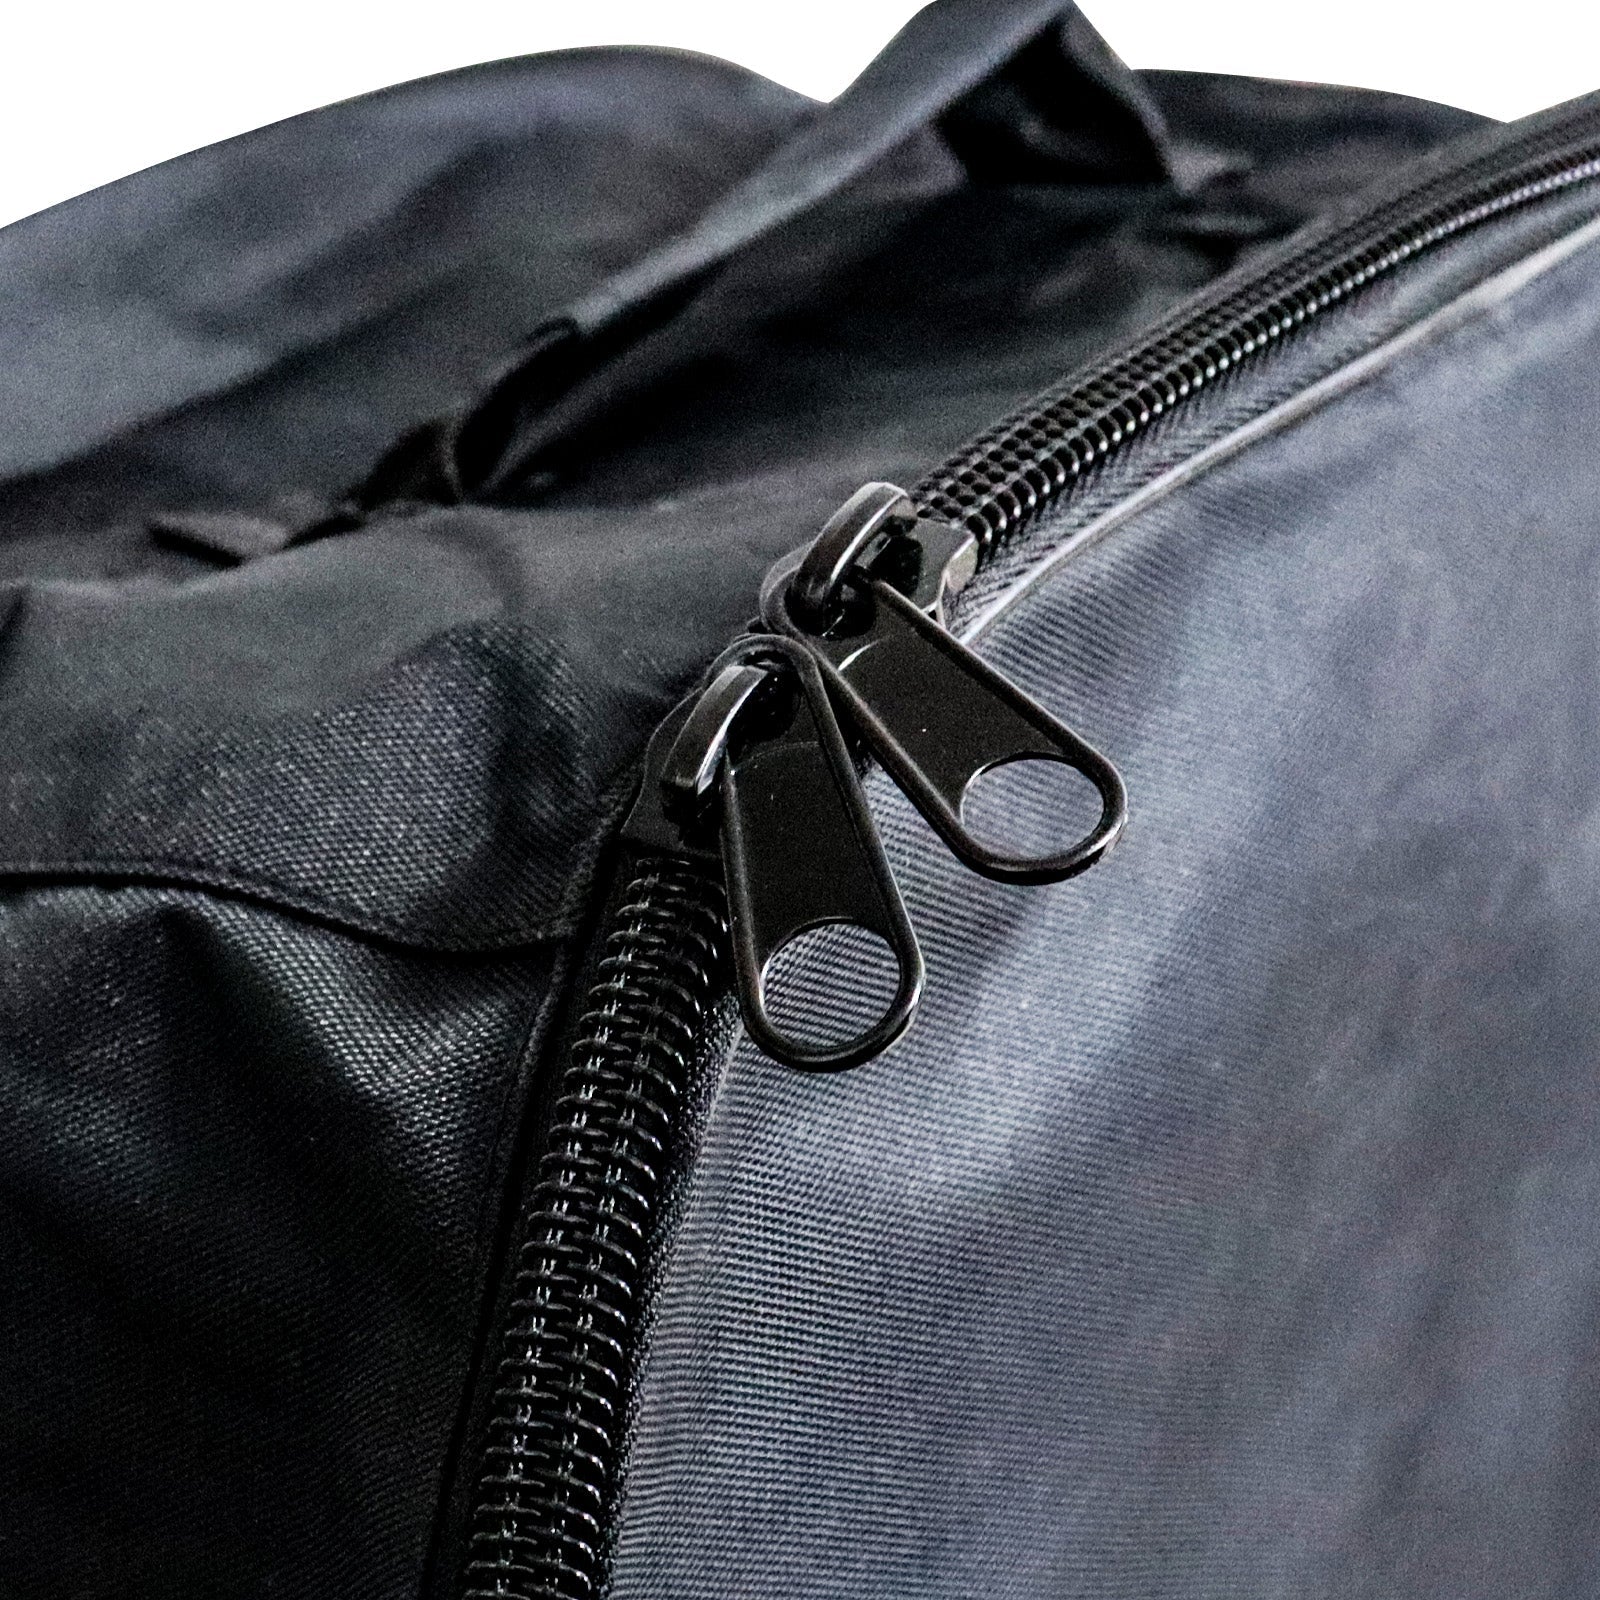 TIGERXBANG-ISUP Backpack